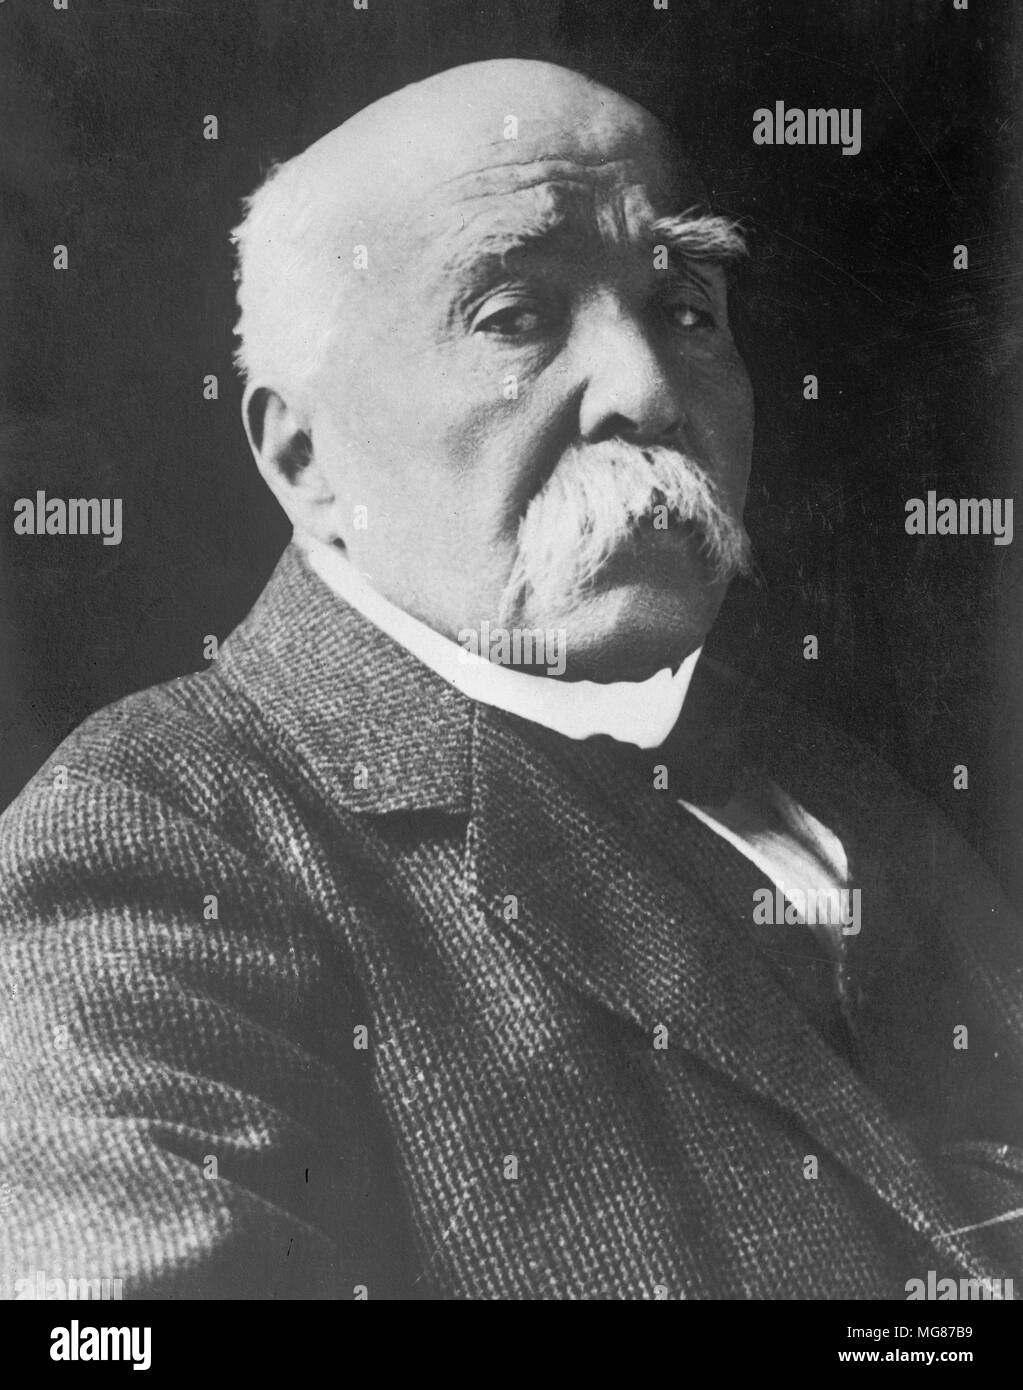 Georges Benjamin Clemenceau, (1841 - 1929) français a été le premier ministre de la France pendant la Première Guerre mondiale Banque D'Images